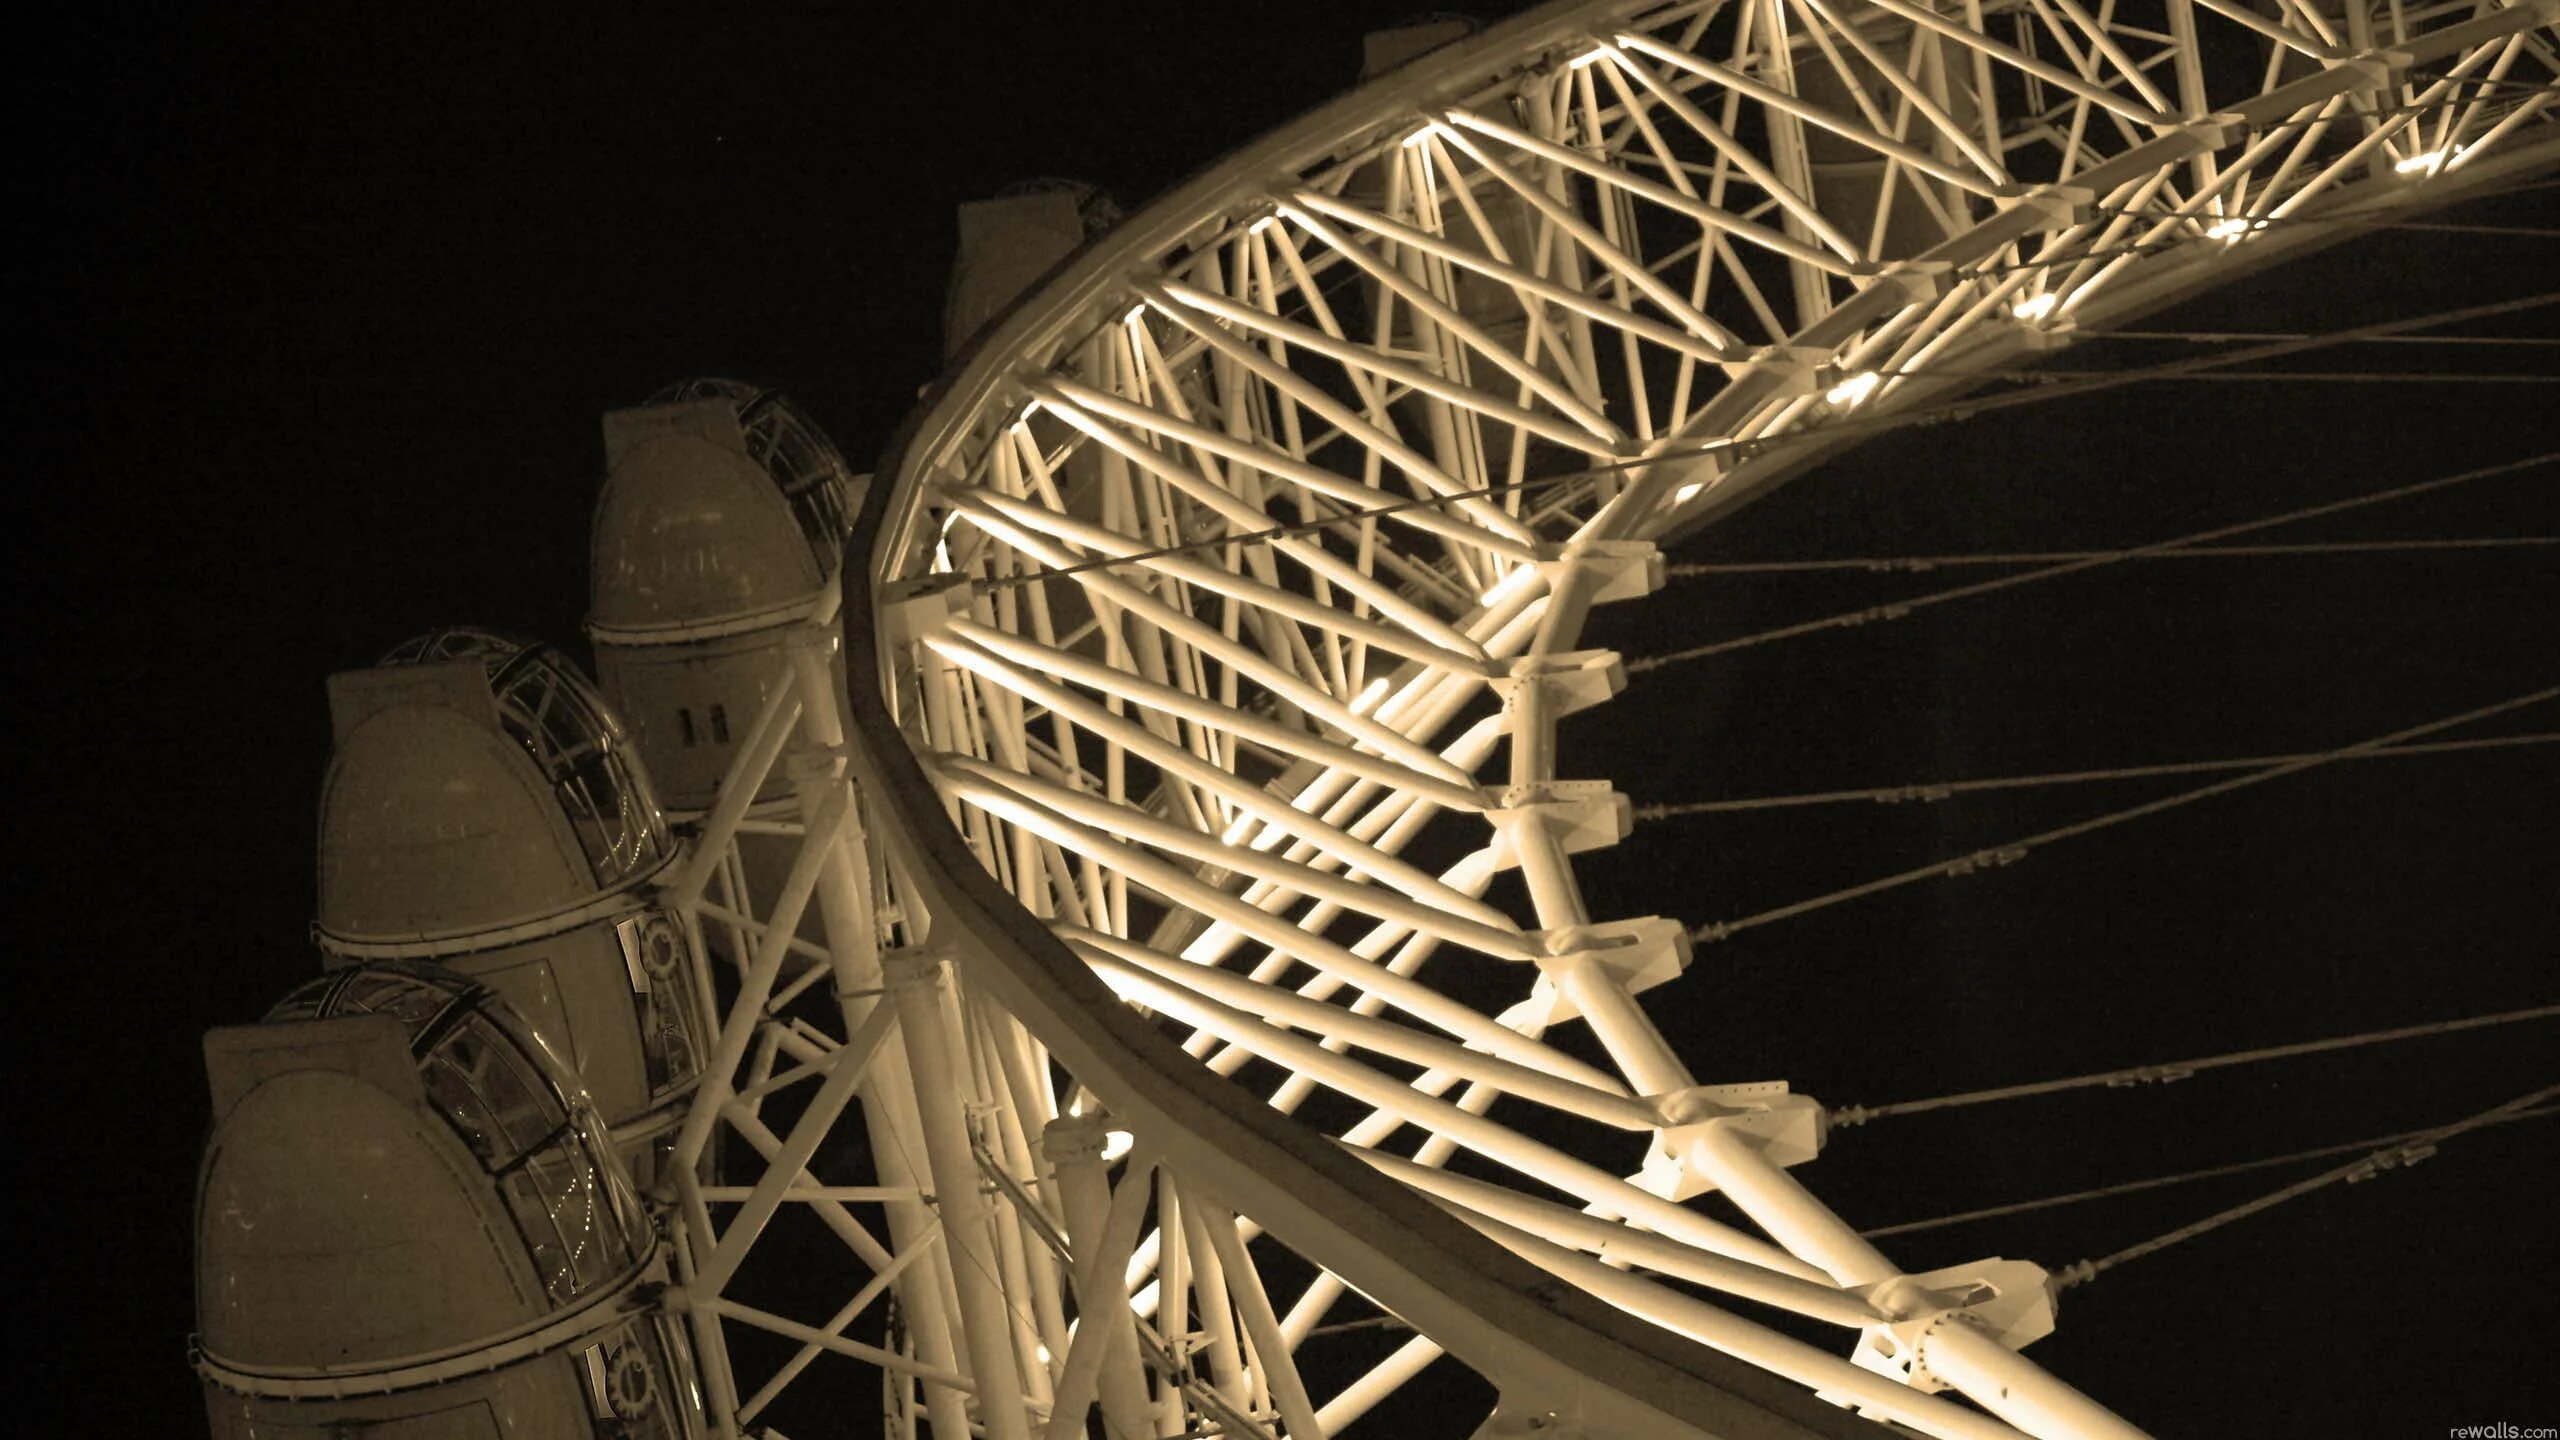 Металлическая конструкция ночью. London Eye. Красивые картинки для Карусель обоев. Карусель обоев на рабочий стол компьютера. Карусель обоев на телефоне реалми